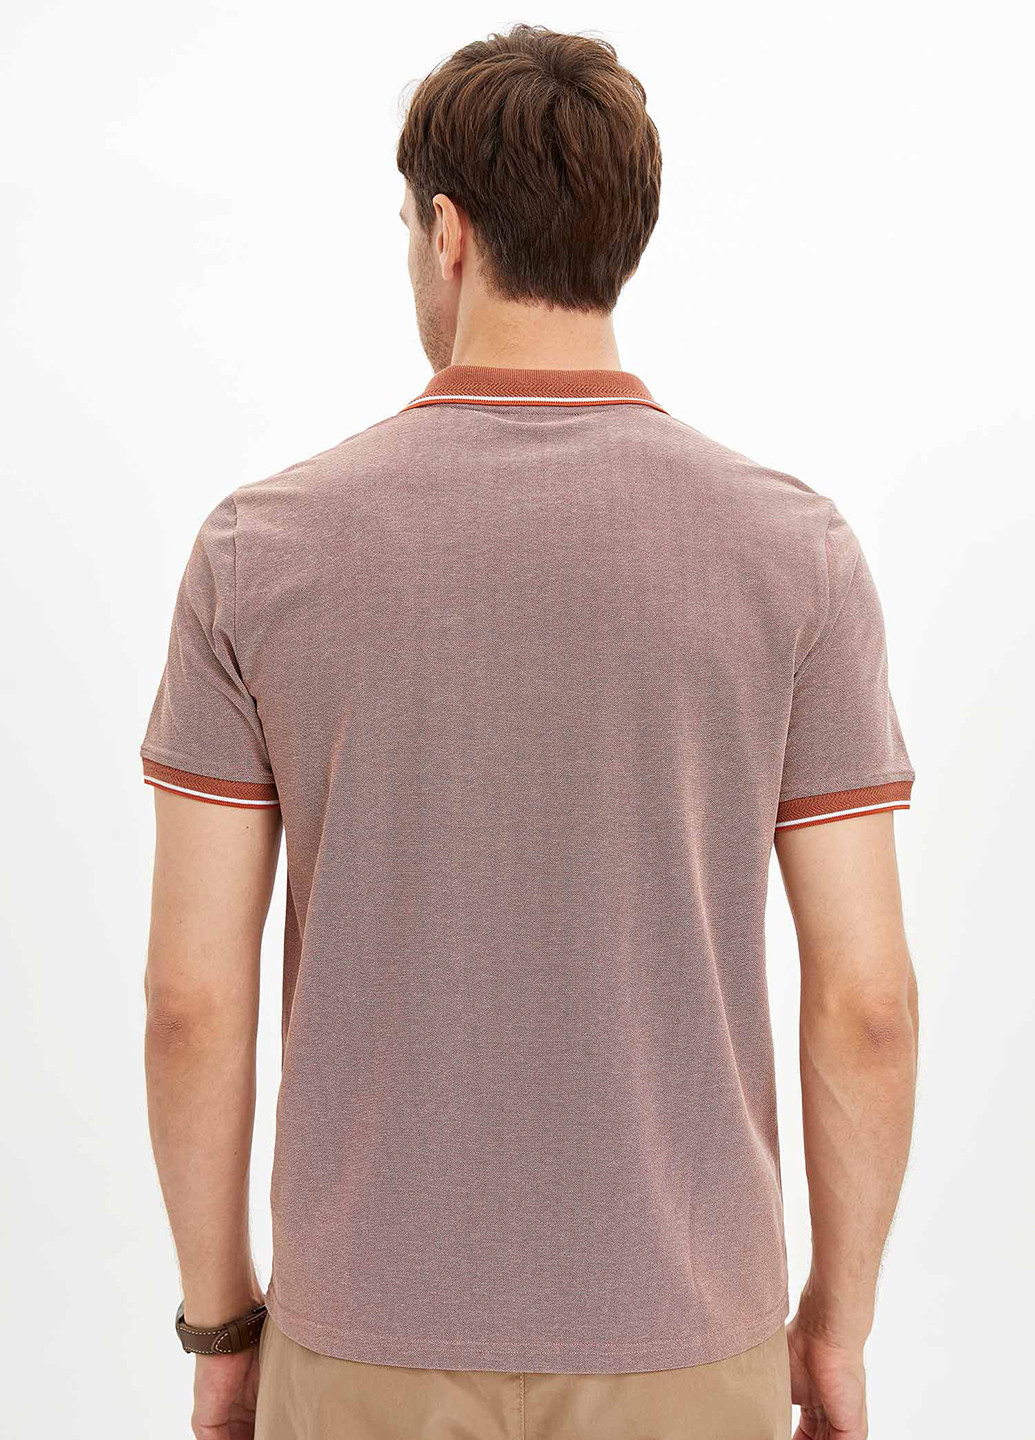 Светло-бордовая футболка-поло для мужчин DeFacto меланжевая